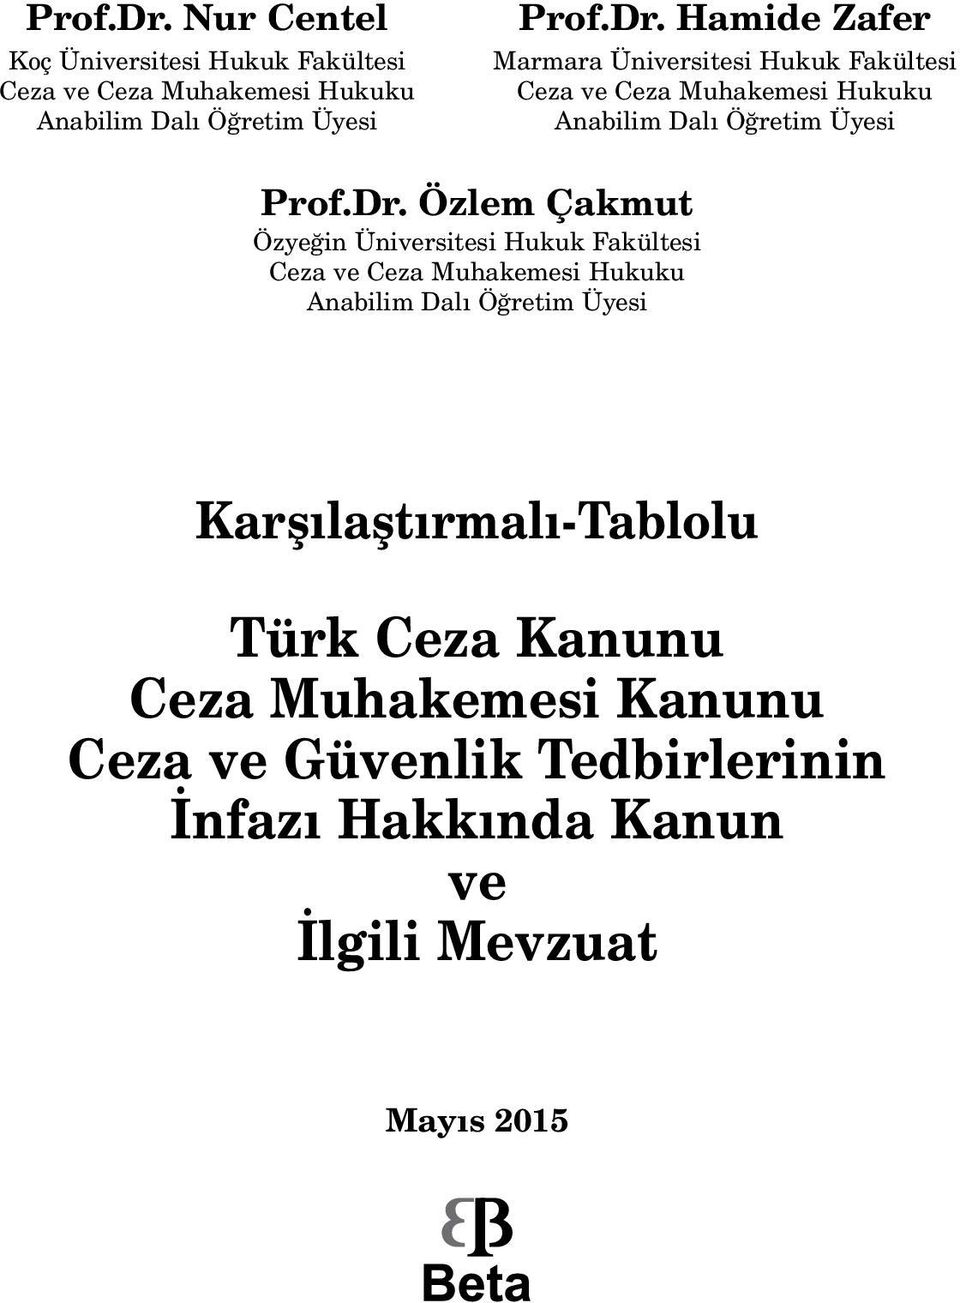 Marmara Üniversitesi Hukuk Fakültesi Ceza ve Ceza Muhakemesi Hukuku Anabilim Dalı Öğretim Üyesi  Özlem Çakmut Özyeğin